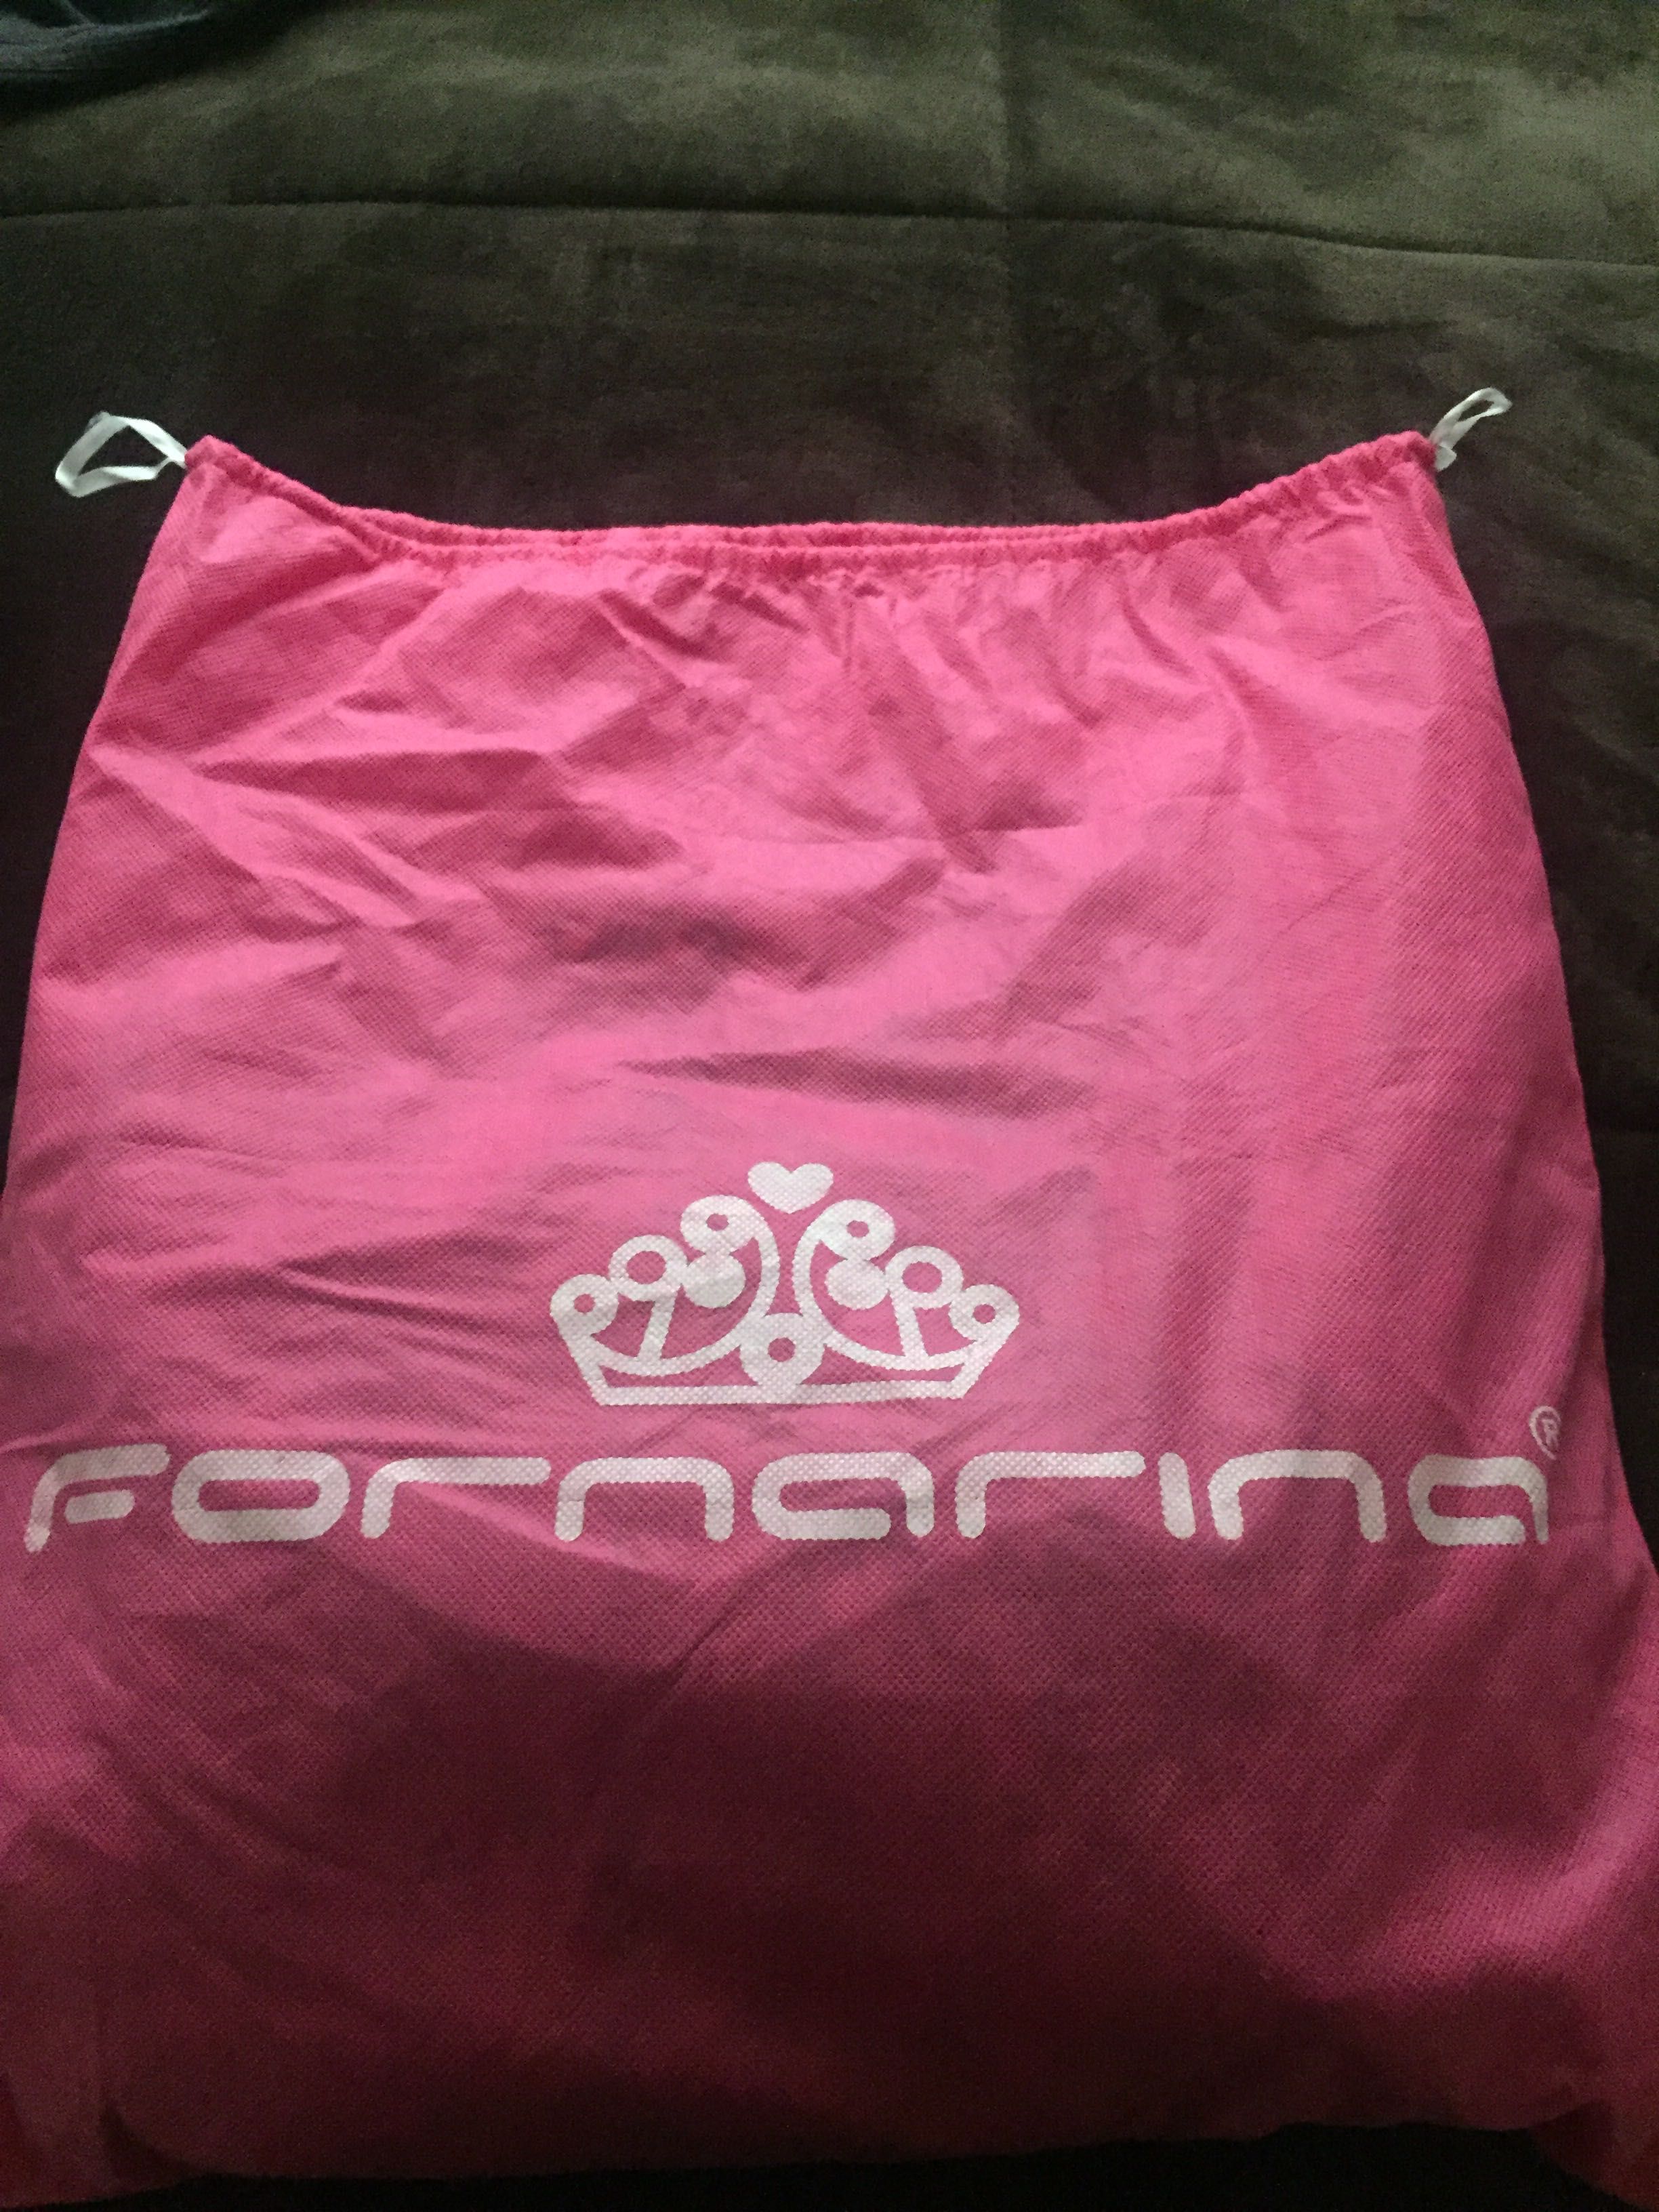 Дамска чанта естествена кожа Fornarina, от вътре е в розов цвят